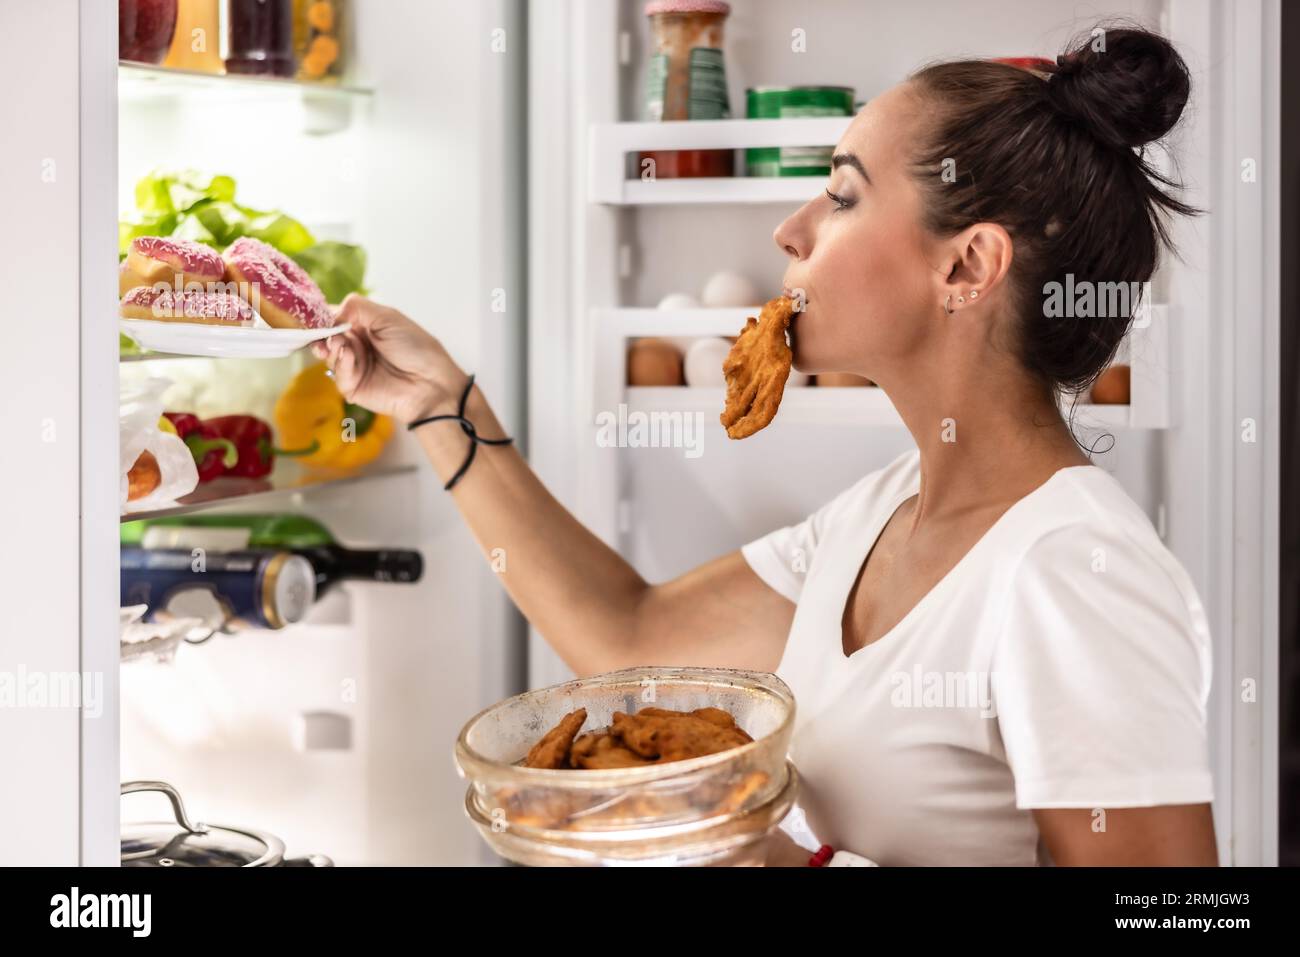 Eine sehr hungrige Frau im Schlafanzug wählt eine Schüssel Schnitzel und Donuts aus dem Kühlschrank. Stockfoto